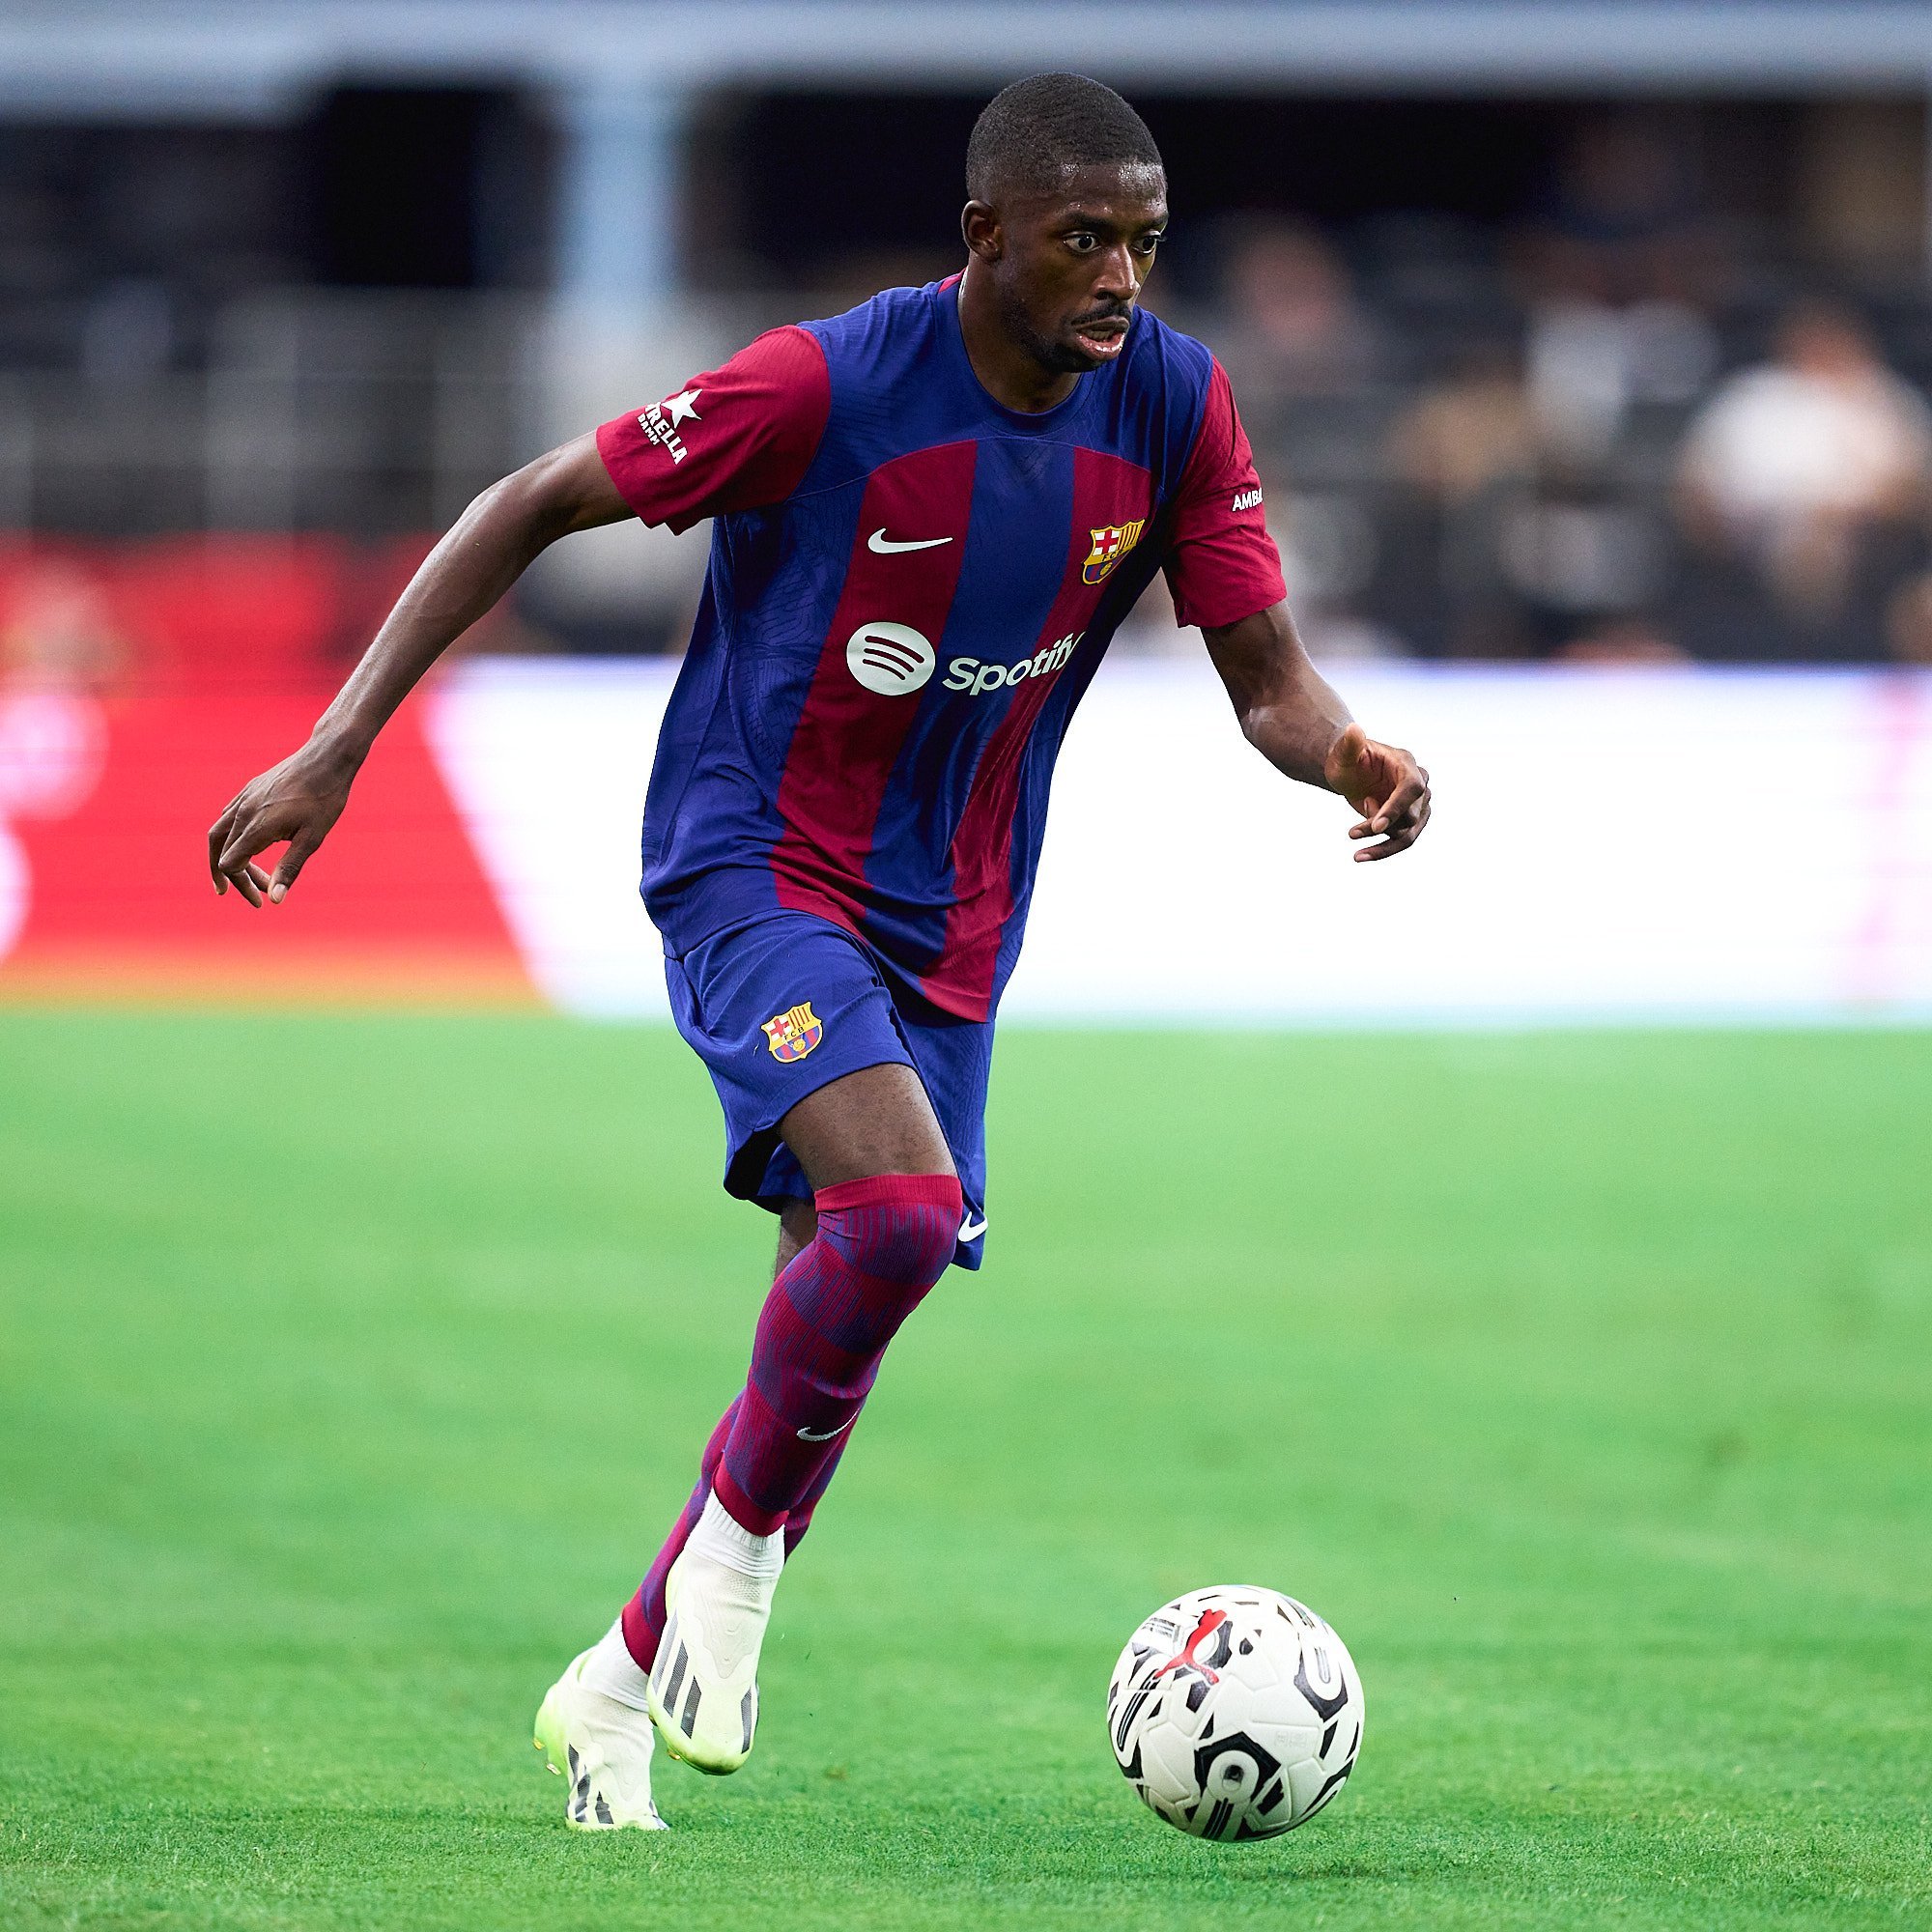 El Barça accepta negociar amb el PSG per Dembélé i li dona 5 dies per tancar l'acord